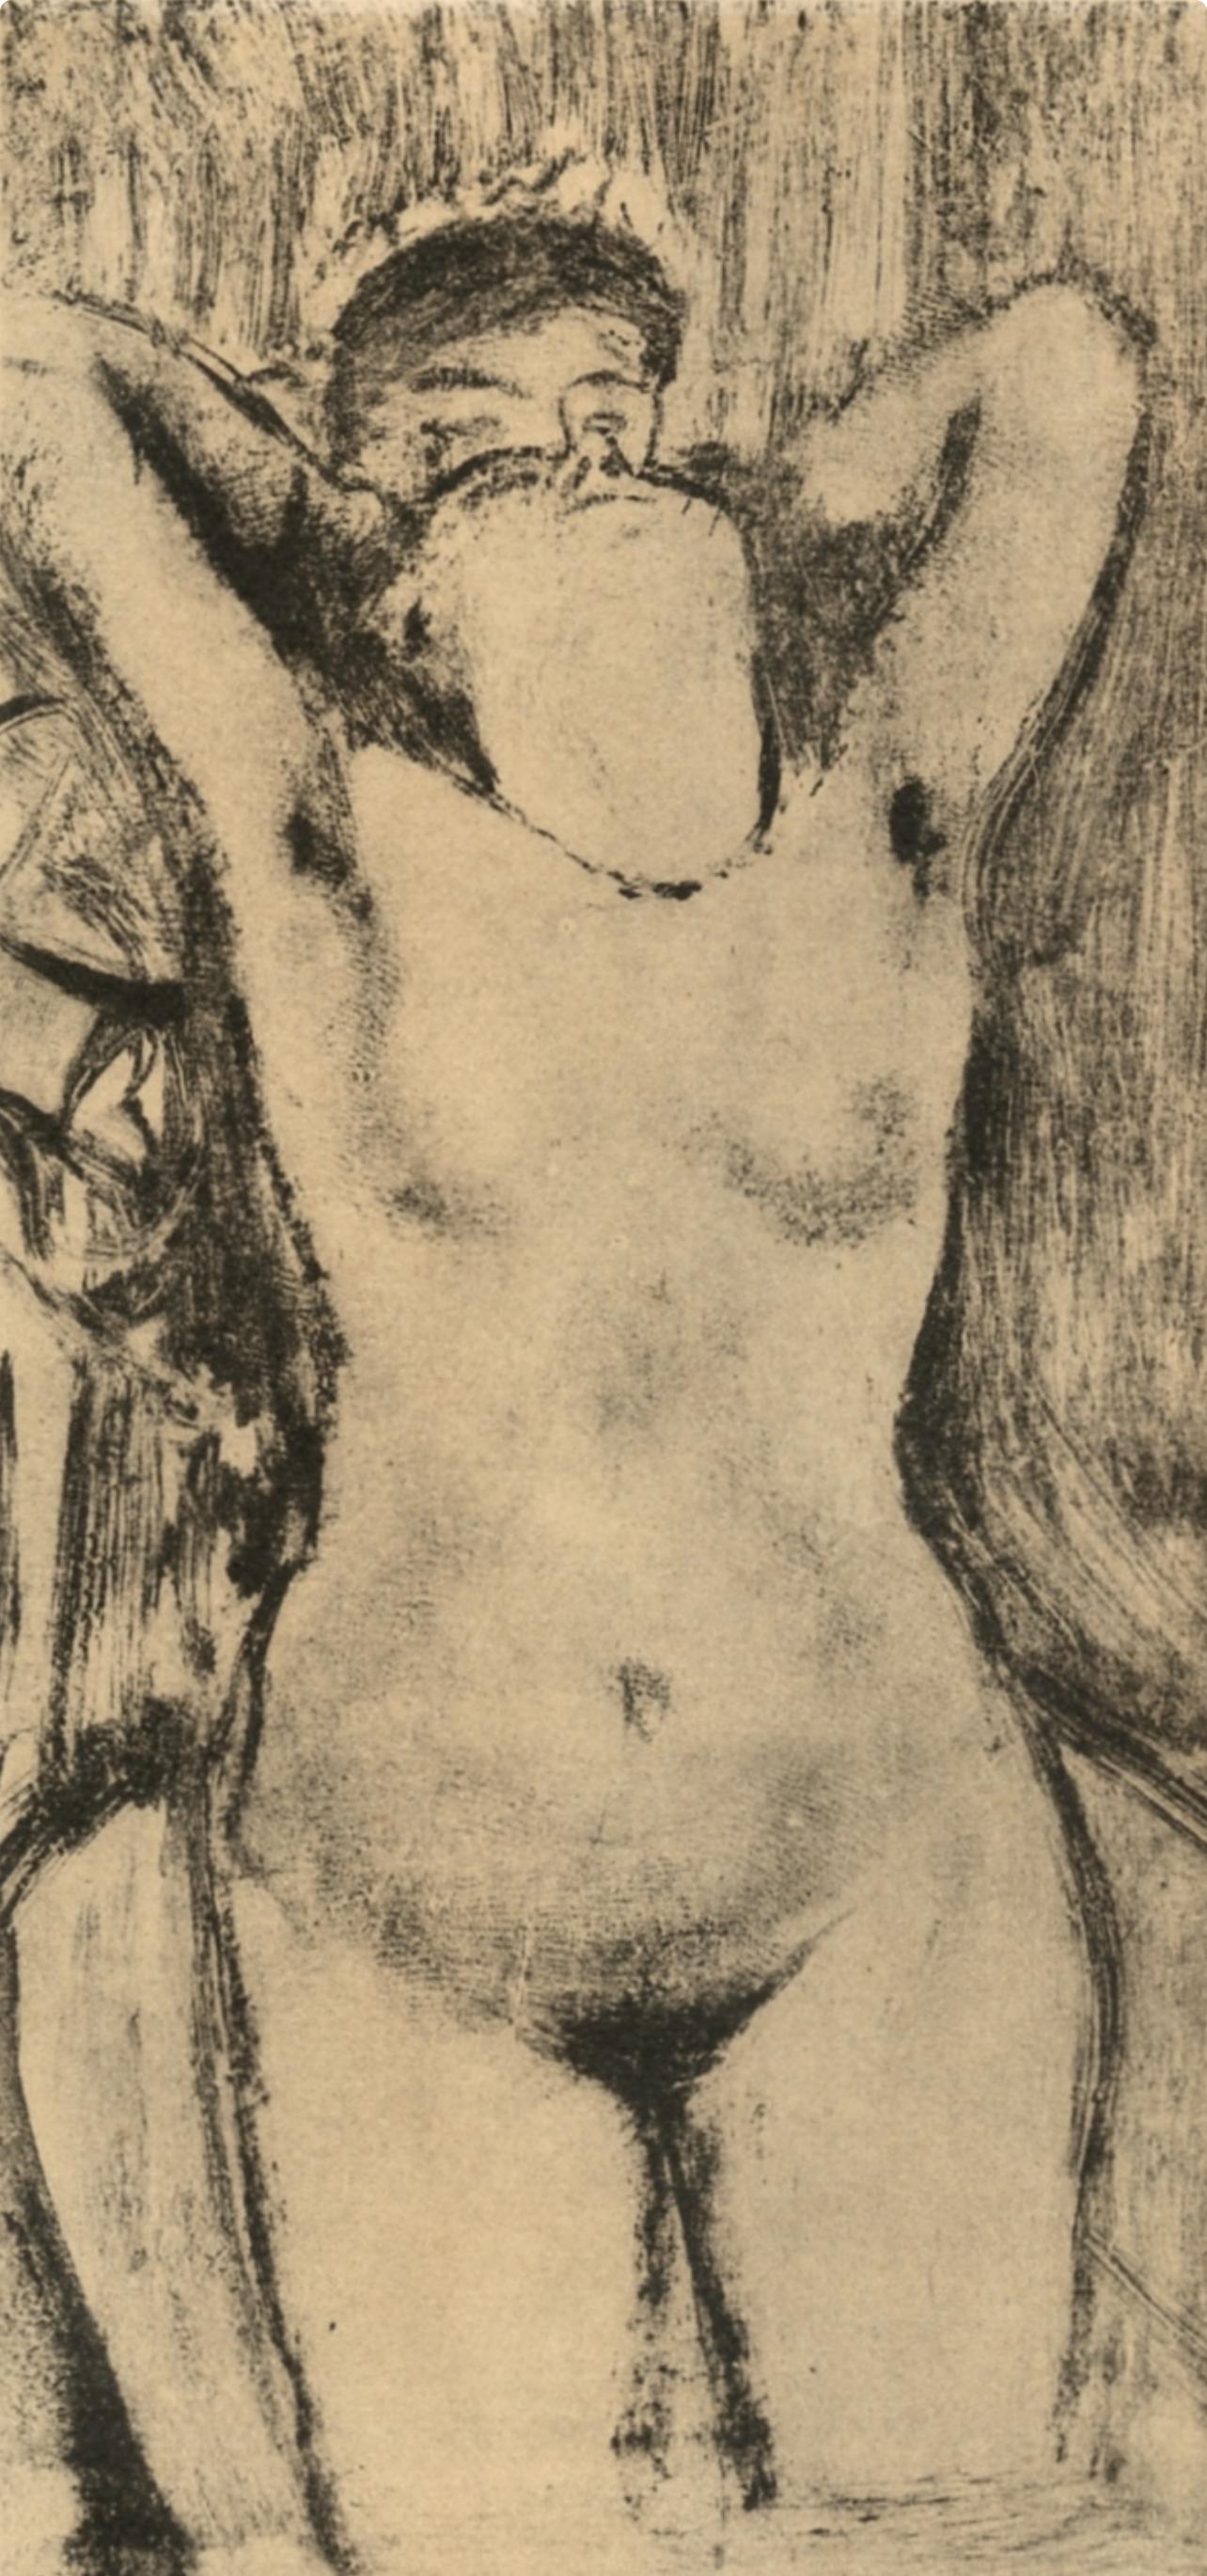 Degas, Femme debout dans une Baignoire, Les Monotypes (nach) – Print von Edgar Degas